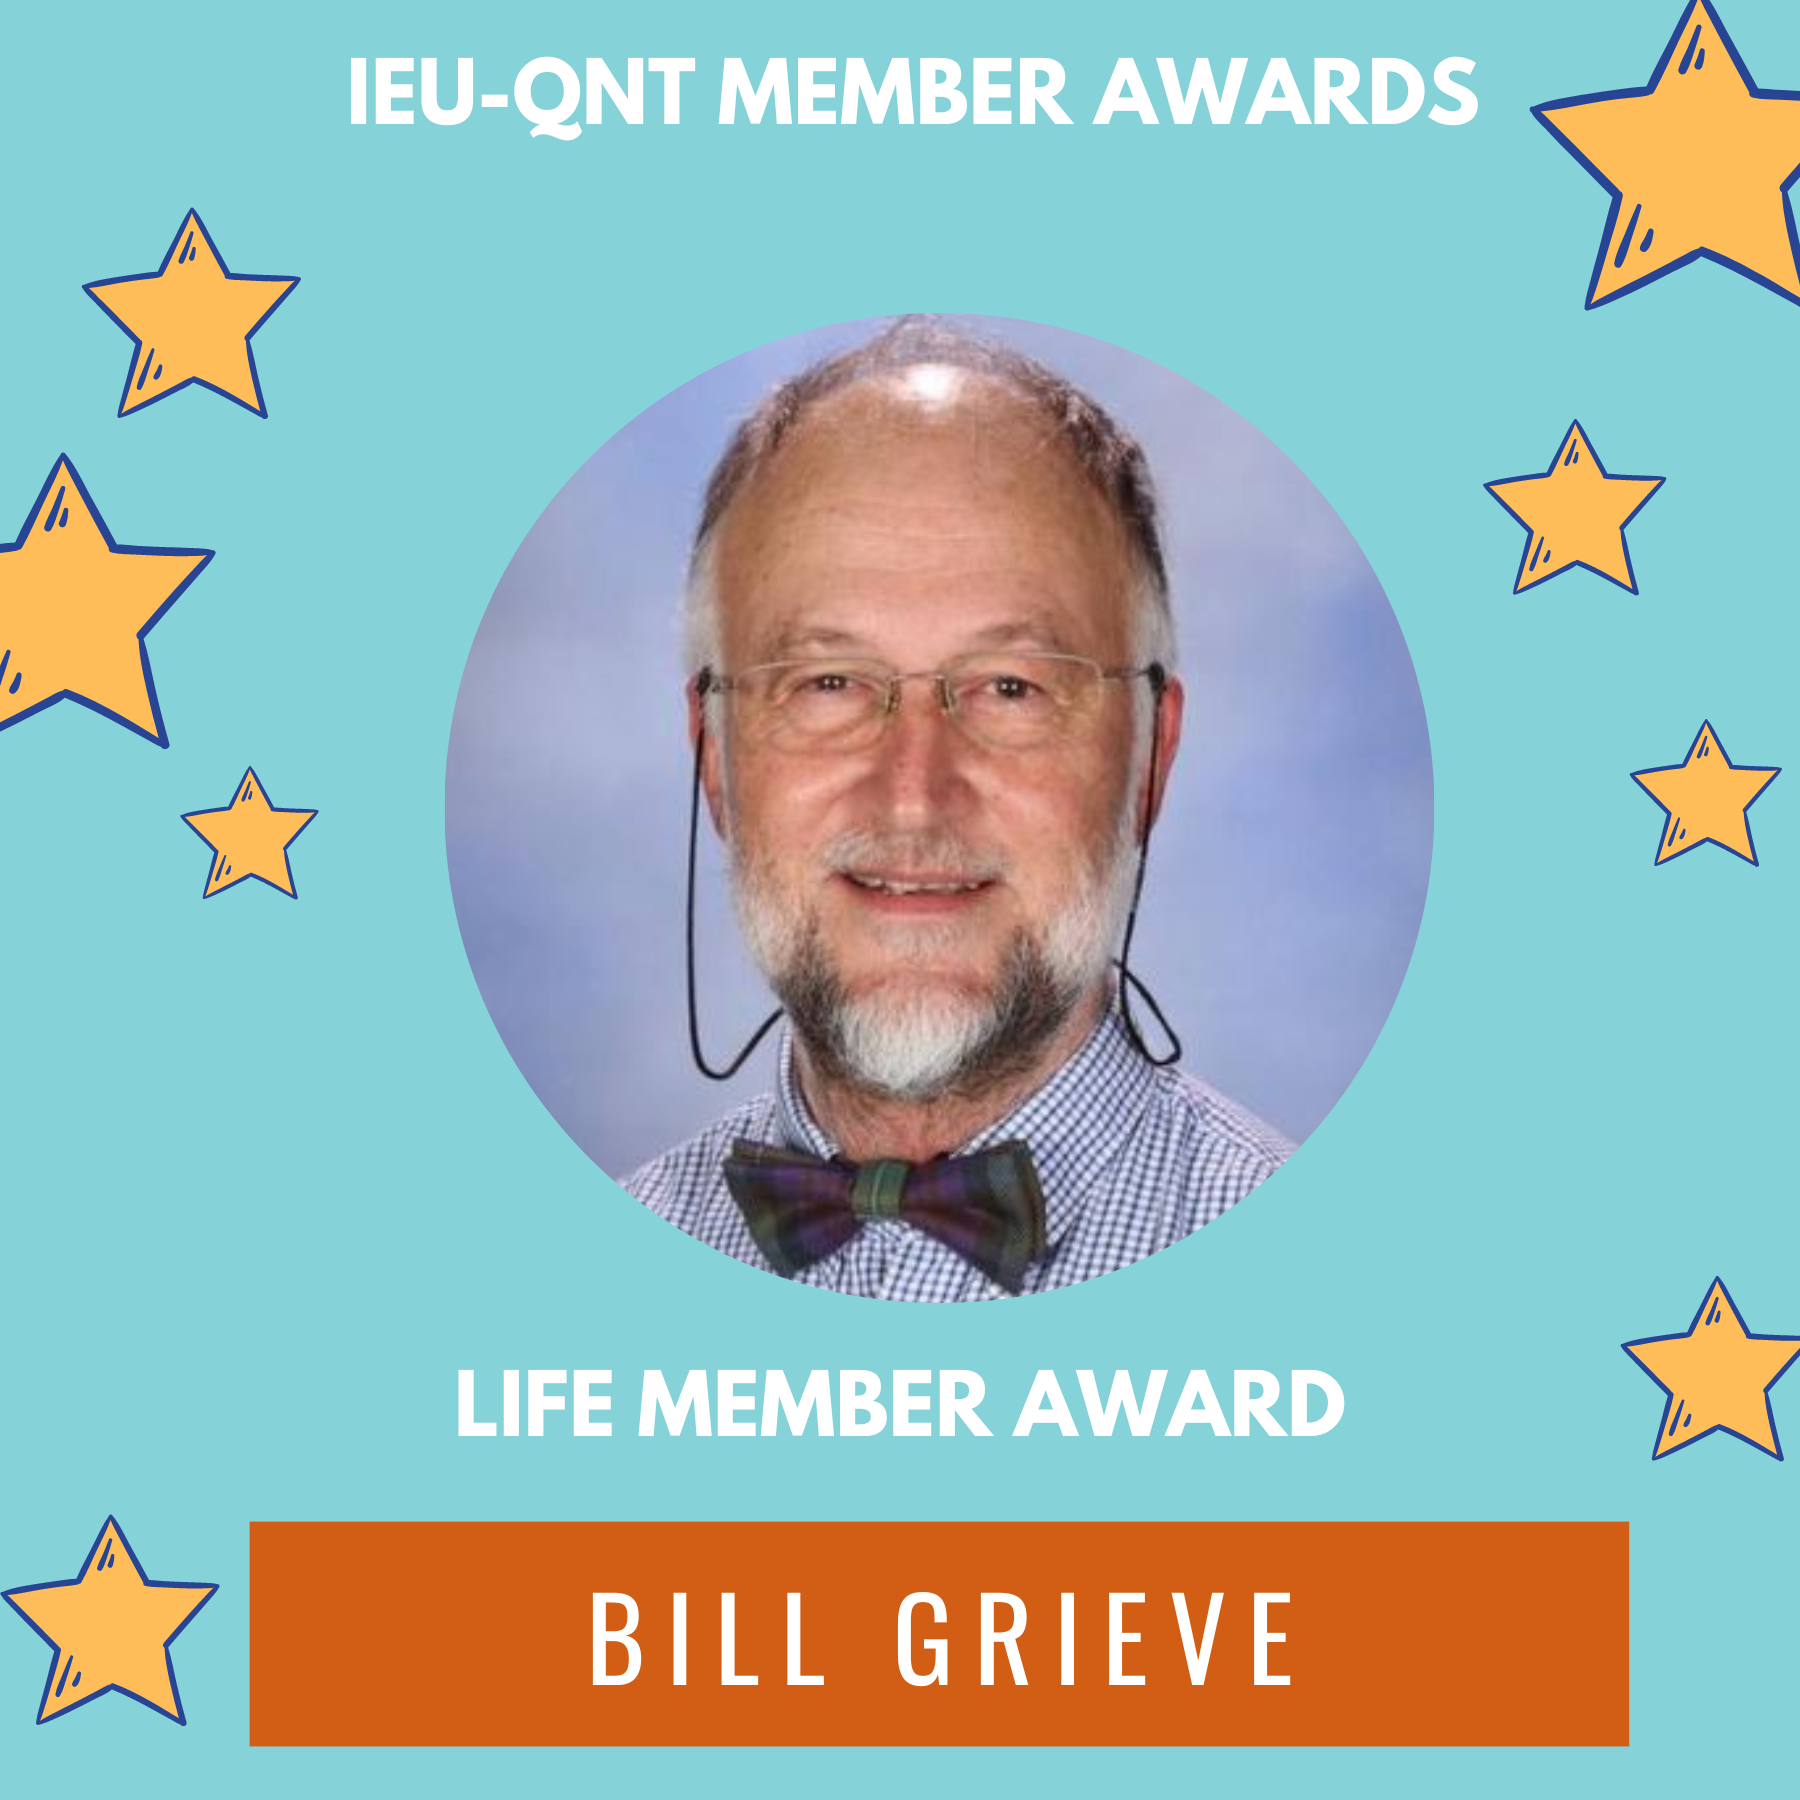 Bill Grieve